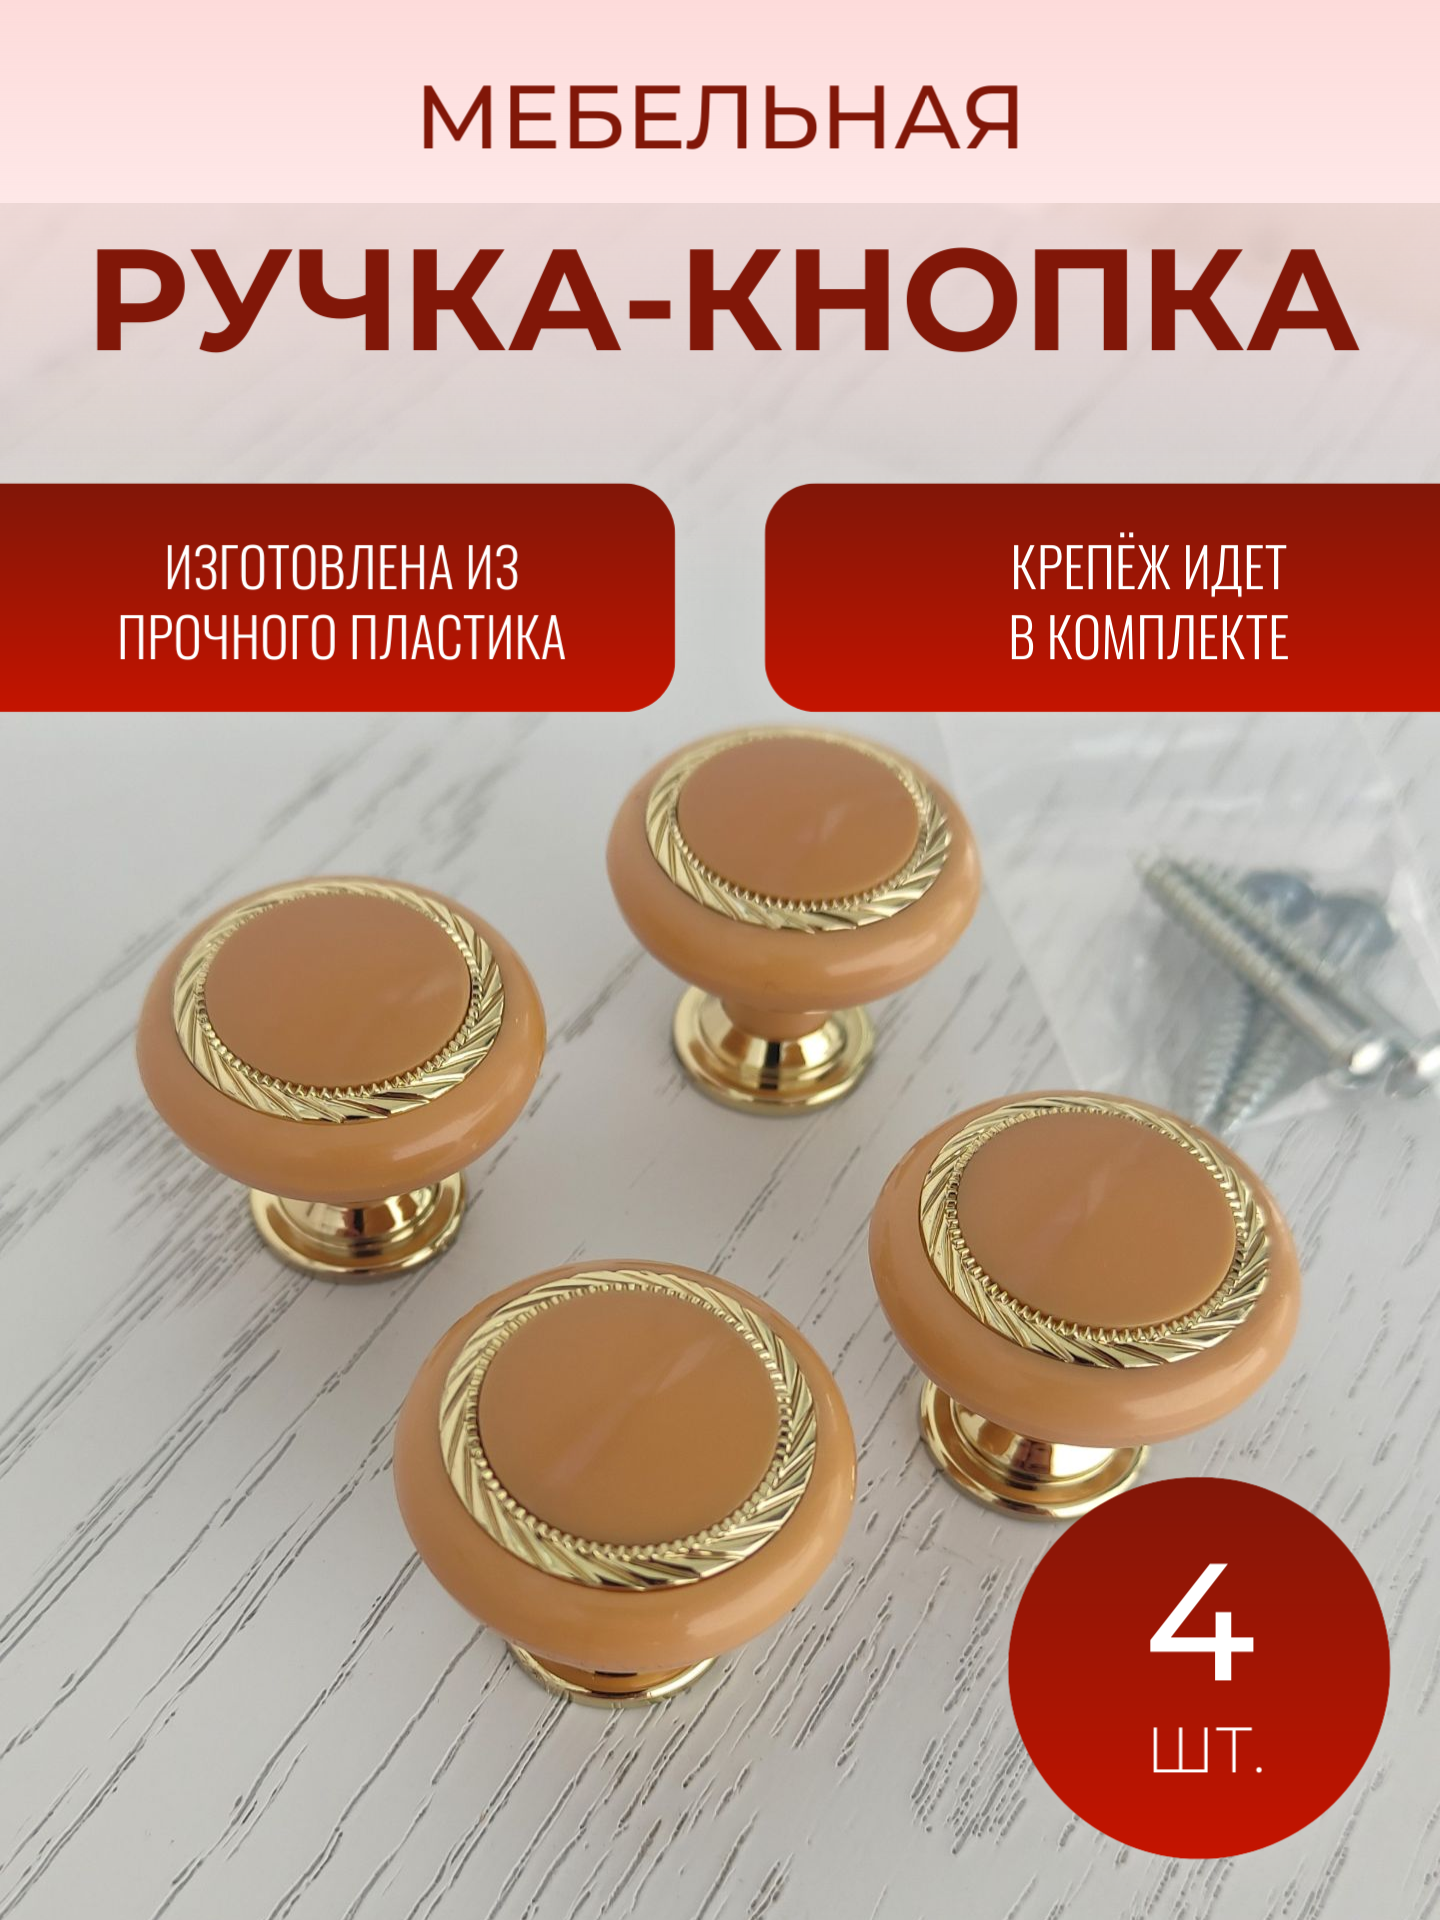 Ручка кнопка мебельная К1, Ольха/Золото (4 шт. в комплекте)